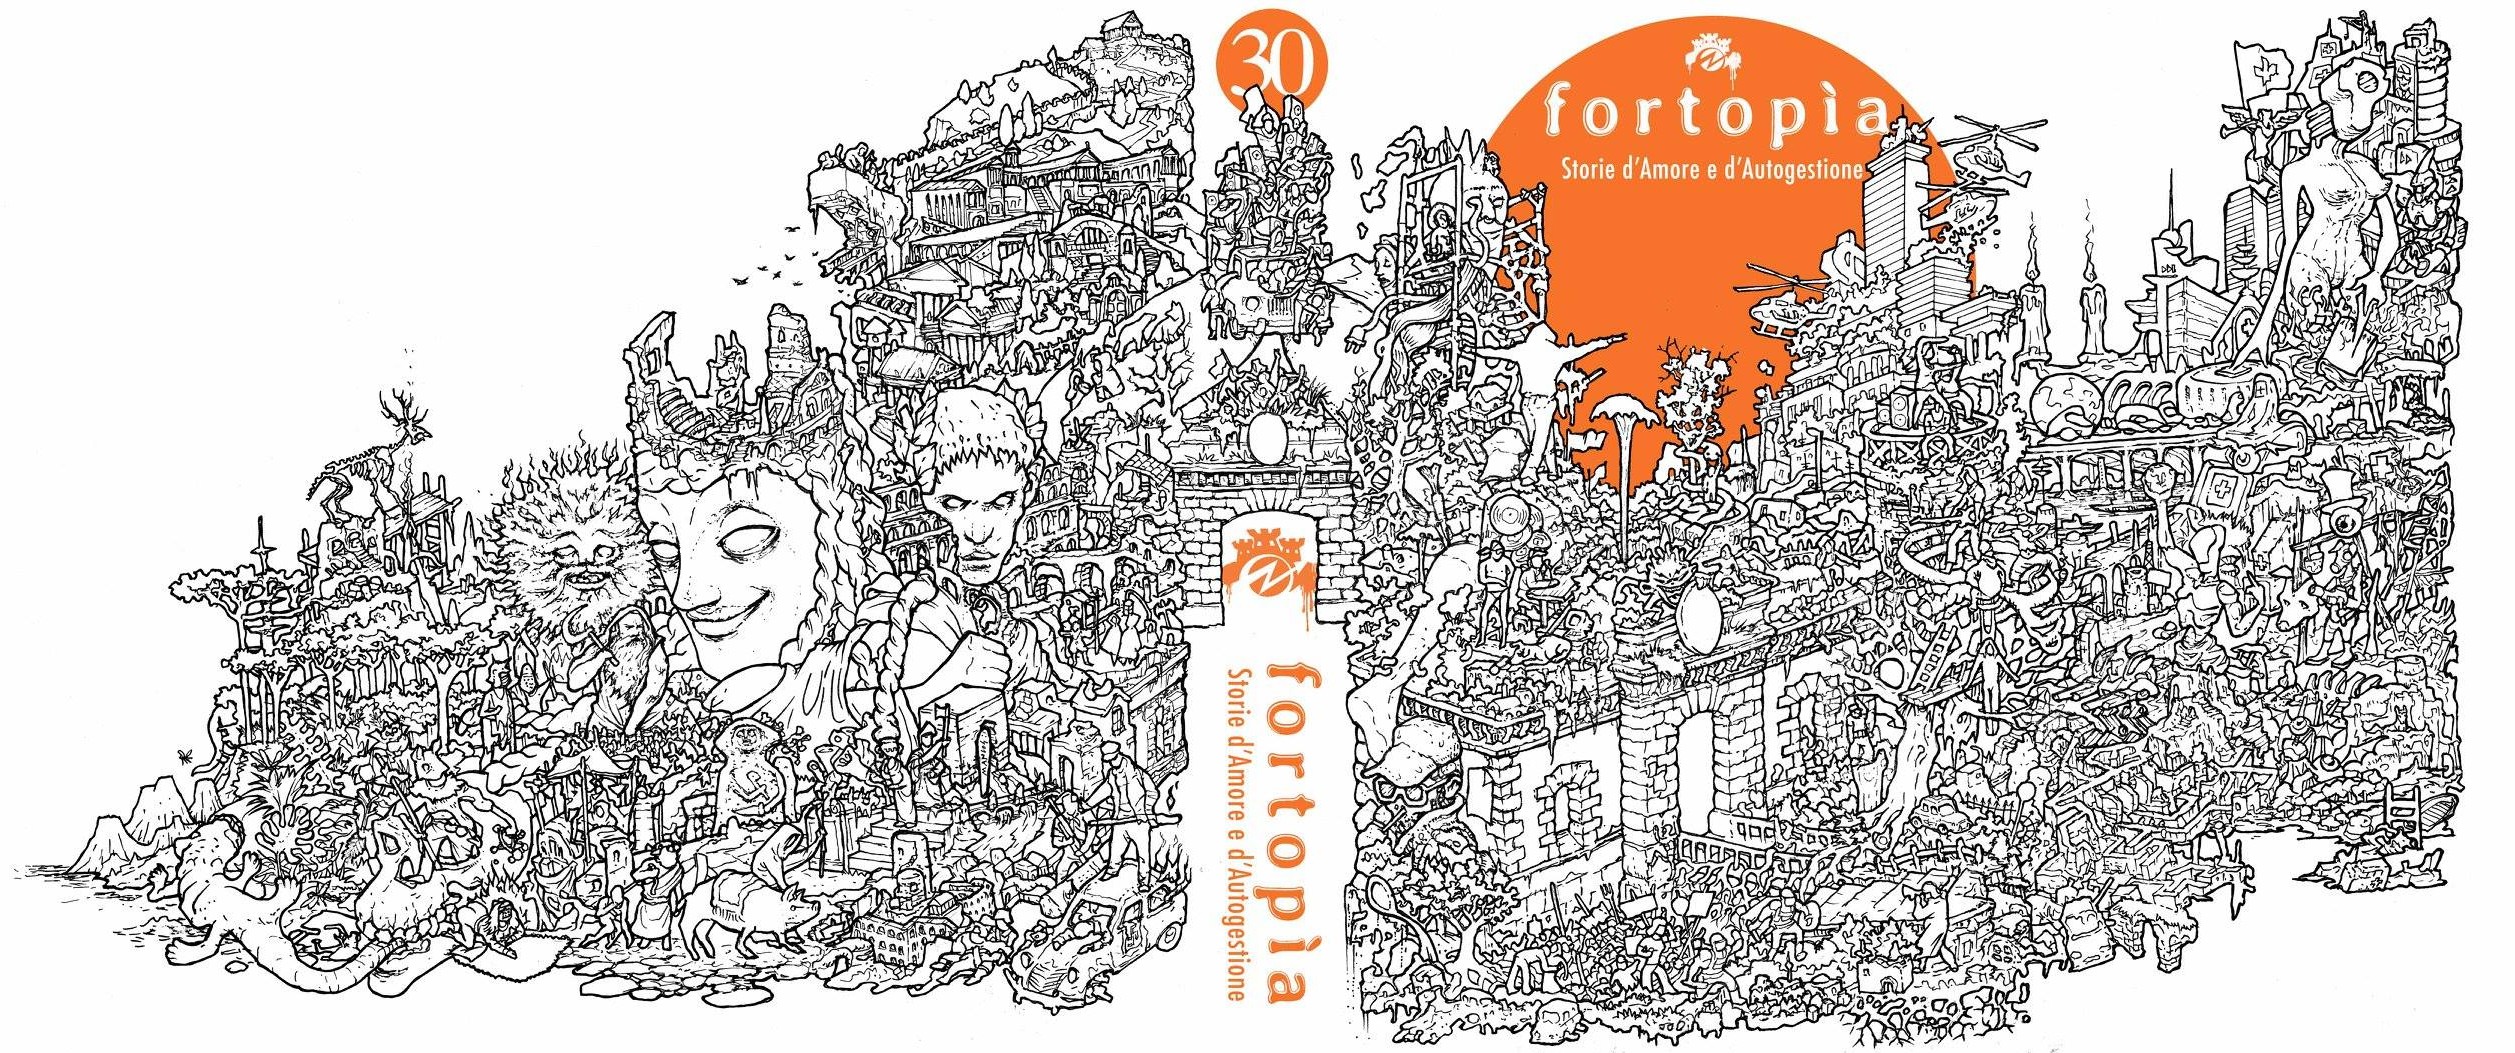 La copertina di "Fortopía " realizzata da Enrico D Elia.